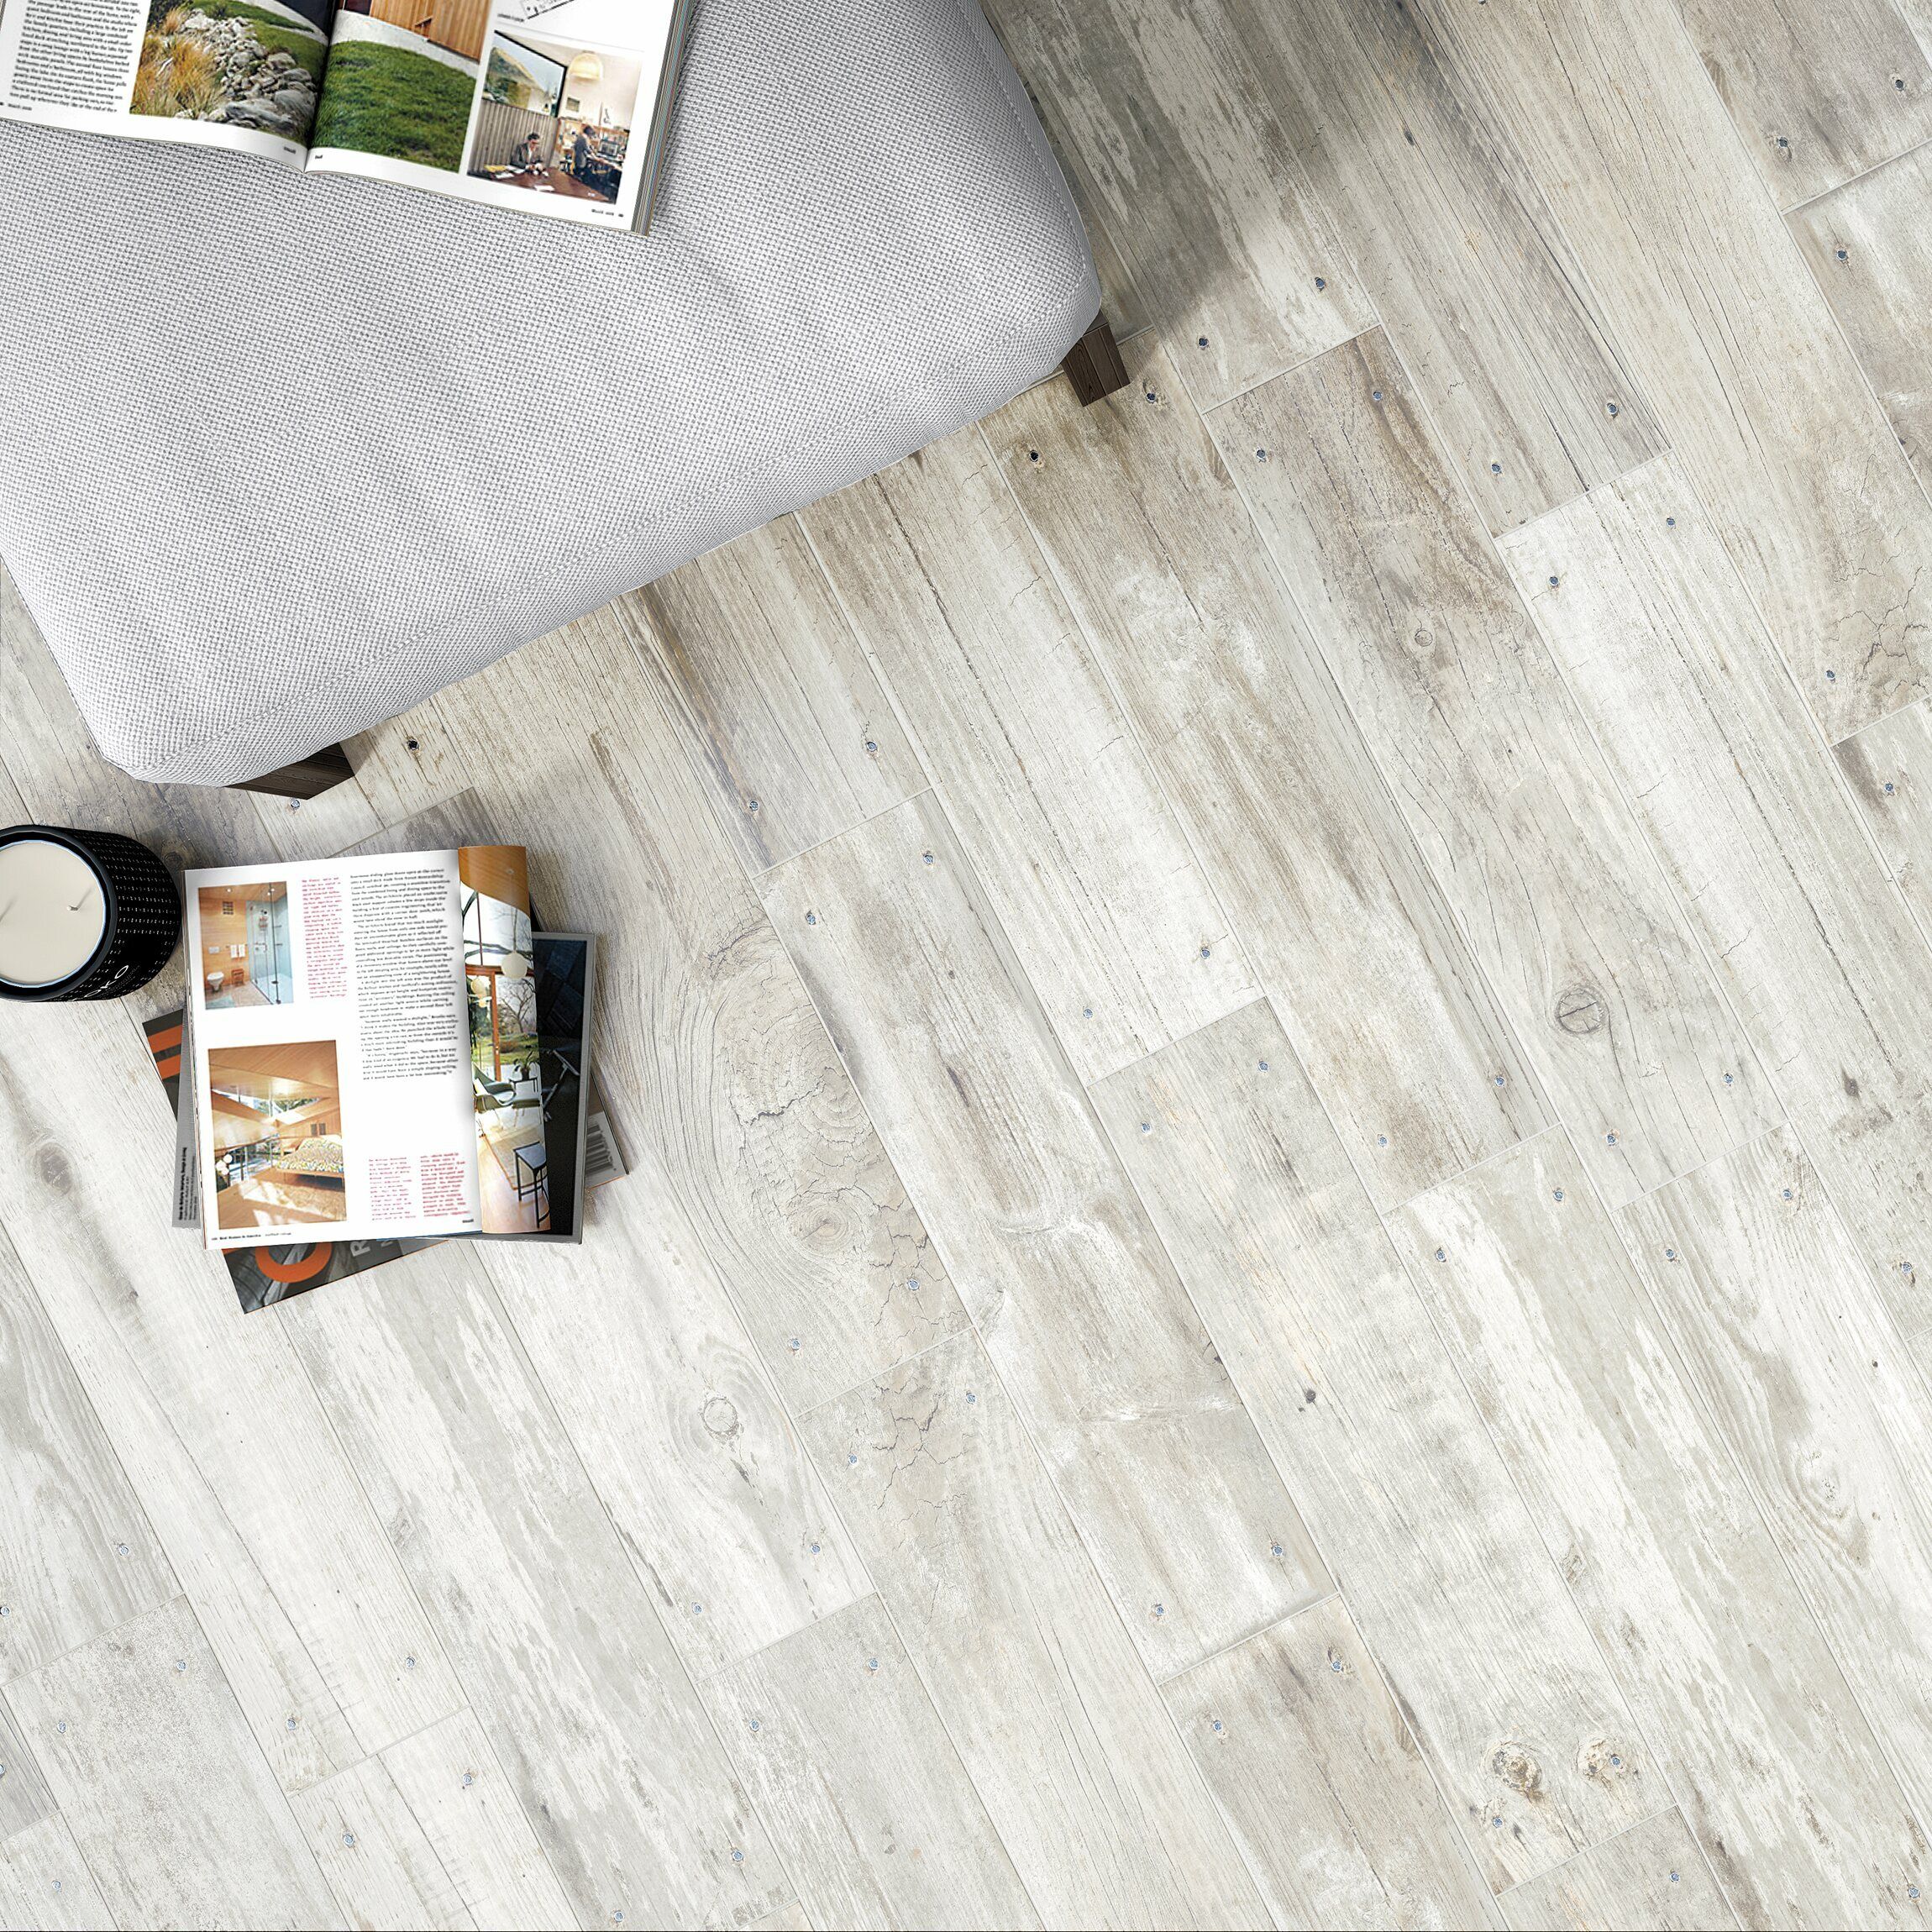 Reclaimed White Oak Nailed Wood Effect, White Wood Floor Tiles